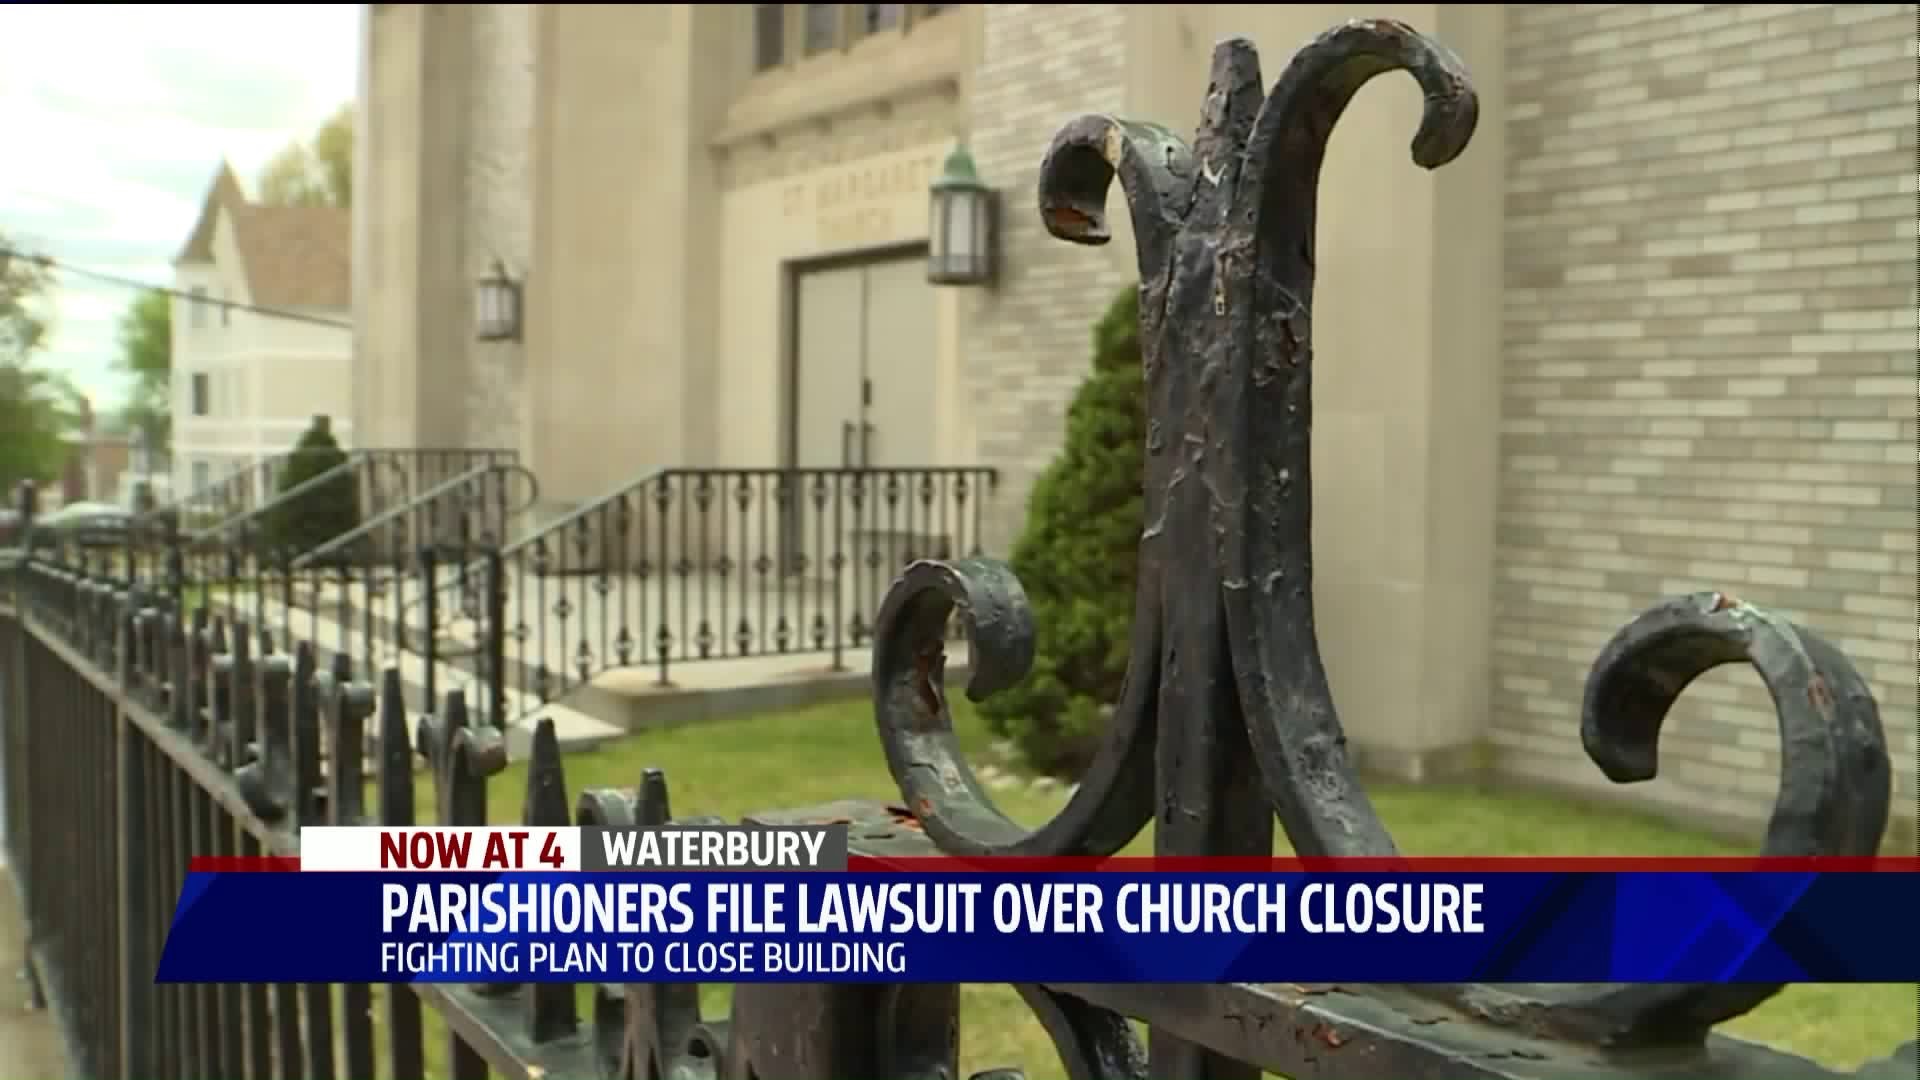 Parishoners file lawsuit over parish closings